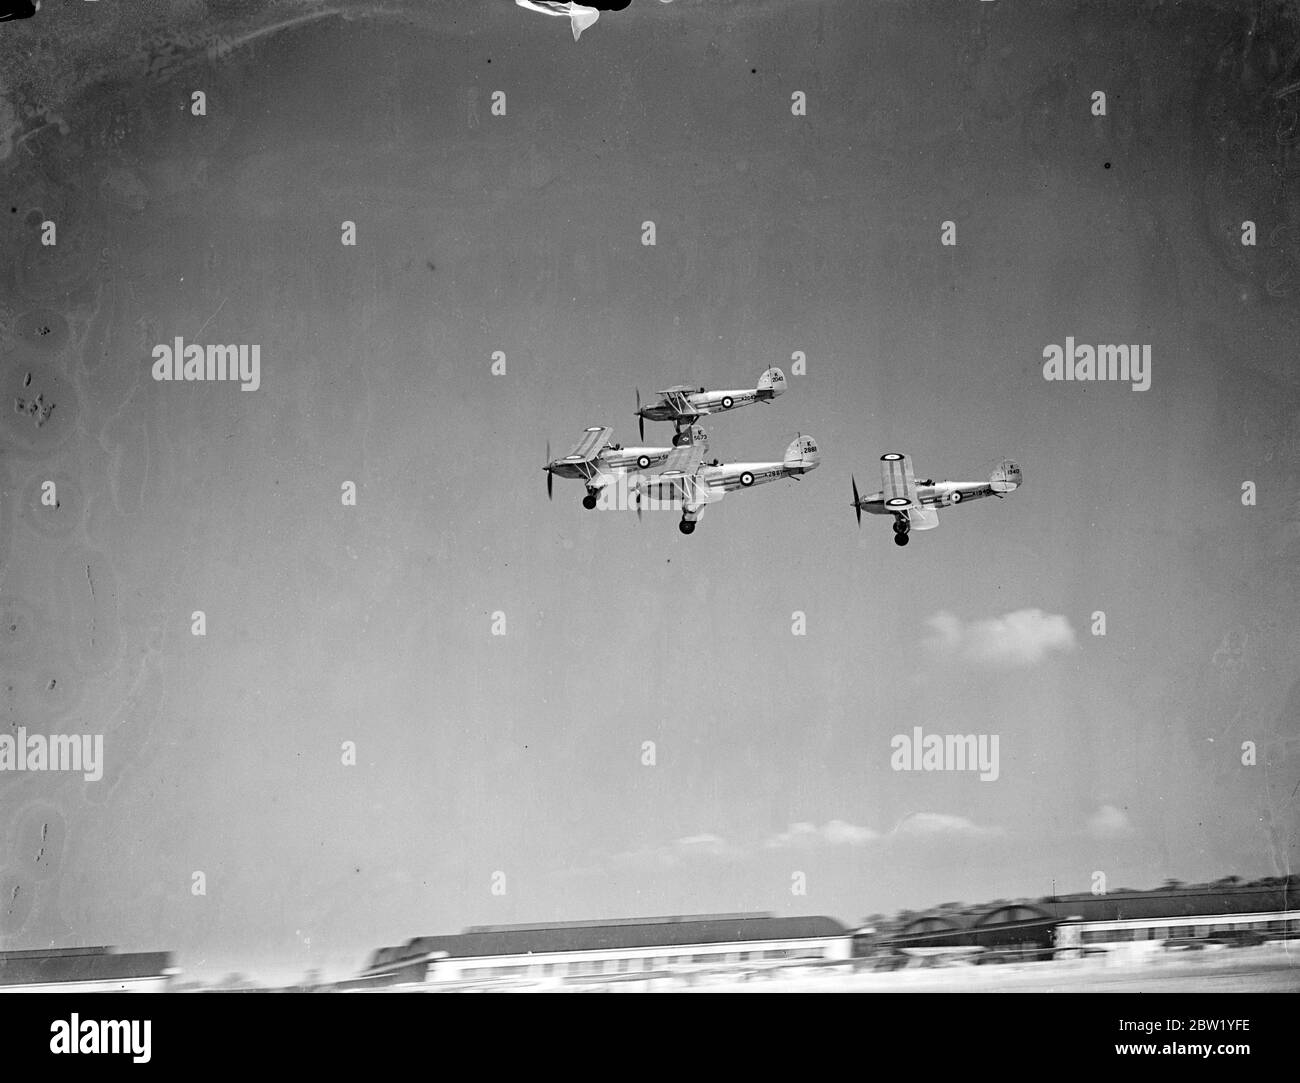 RAF bietet eine Hochgeschwindigkeitsanzeige, wenn sie für Hendon Pageant wiederheraufkommt. Die Piloten der Royal Air Force haben einige der schnellsten Flugzeuge des Flugzeugs im Einsatz geprobt und am 26. Juni Tausende auf dem jährlichen Pageant am Hendon Aerodrome versammelt. Der König wird eine Fliege-Vergangenheit von 250 Flugzeugen sehen. Foto zeigt: Hawker Furies zeigt Akrobatik in Hendon. Juni 1937 Stockfoto